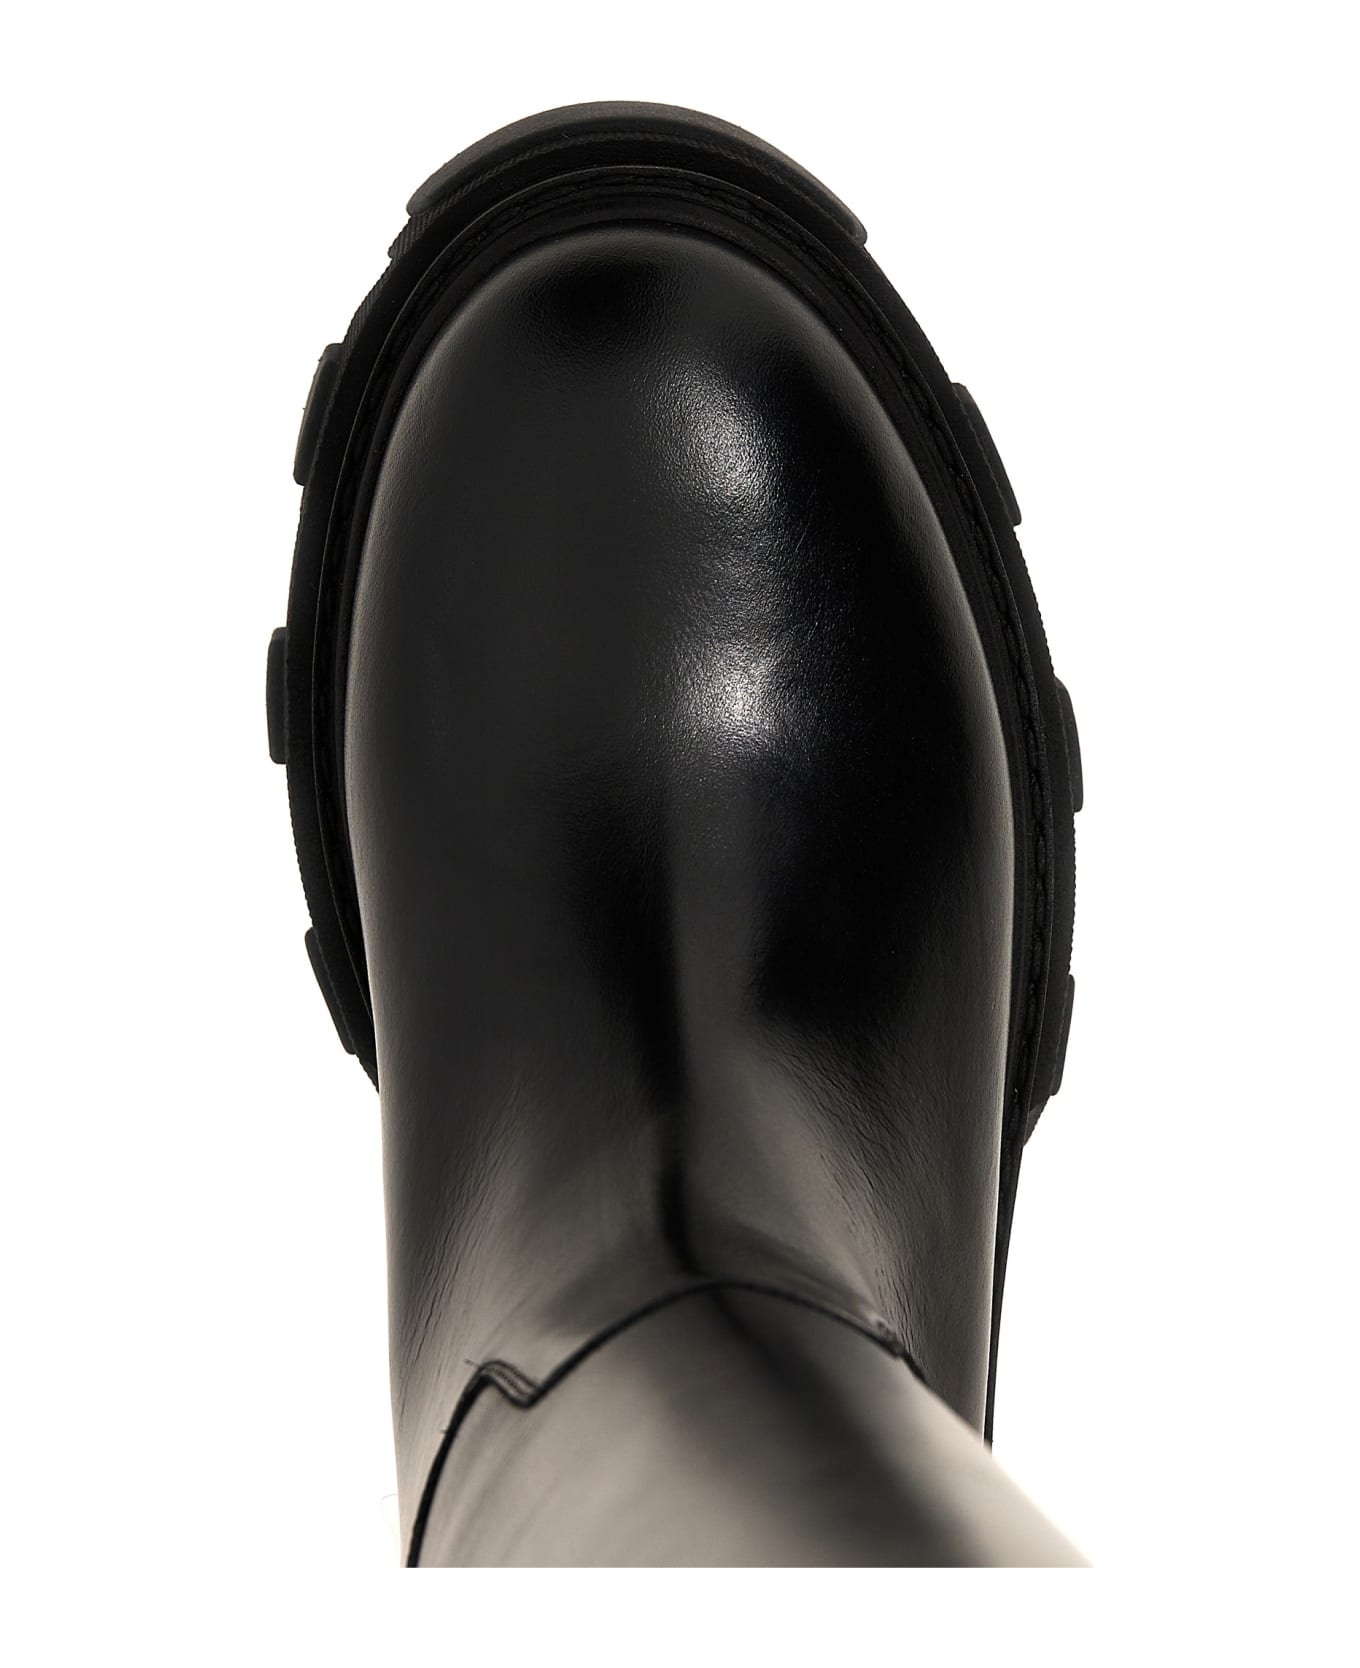 GIA BORGHINI 'perni 07' Ankle Boots - BLACK ブーツ